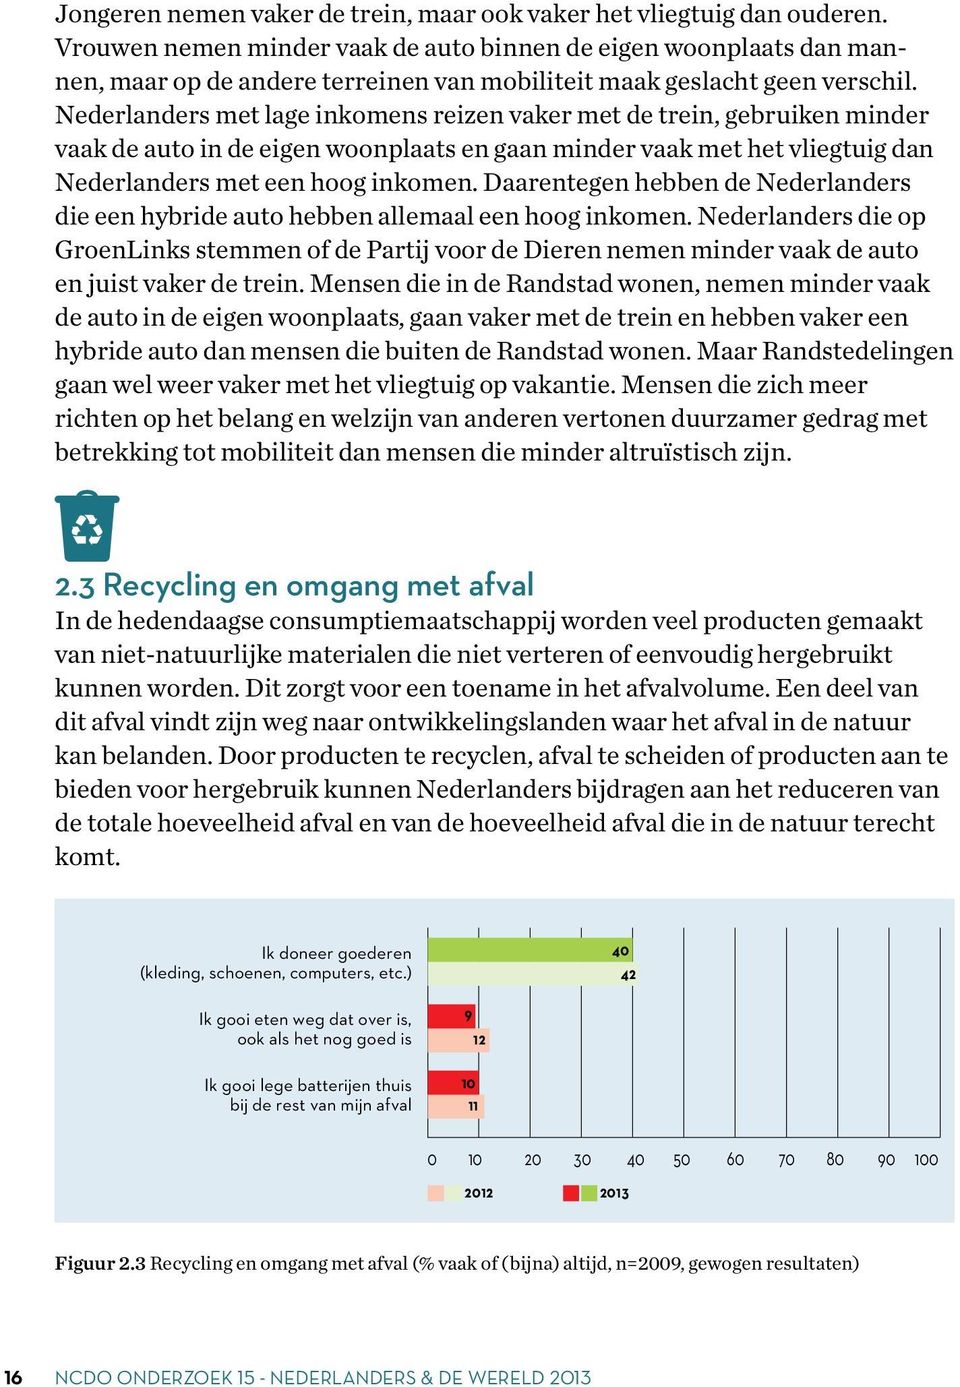 Nederlanders met lage inkomens reizen vaker met de trein, gebruiken minder vaak de auto in de eigen woonplaats en gaan minder vaak met het vliegtuig dan Nederlanders met een hoog inkomen.